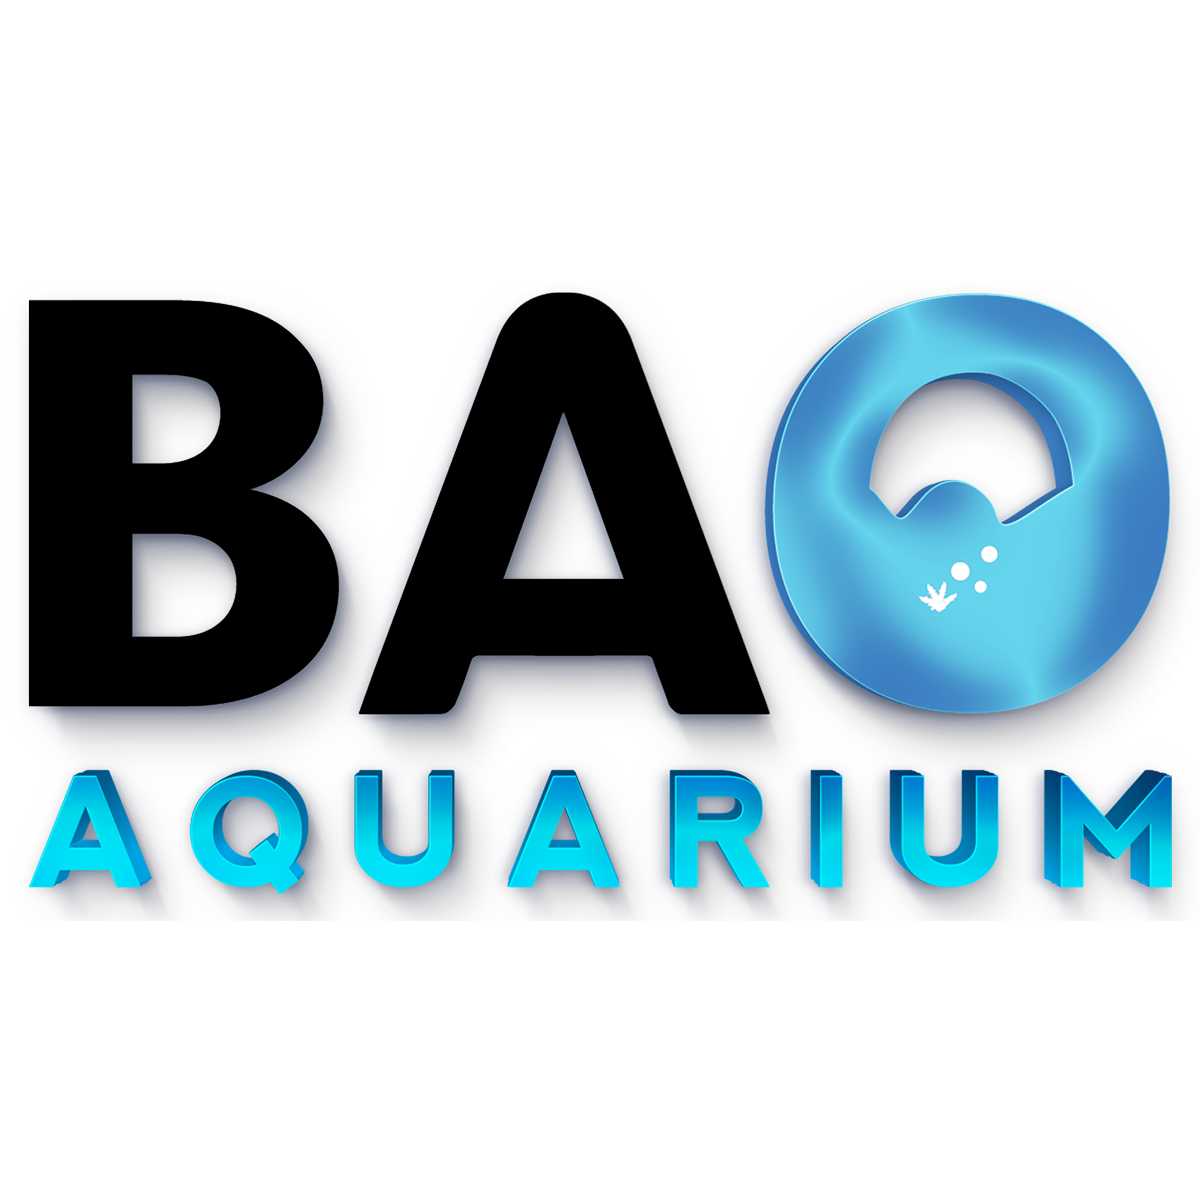 JBL - Nourriture Bloc-vacances Holi-Day pour Poisson d'Aquarium